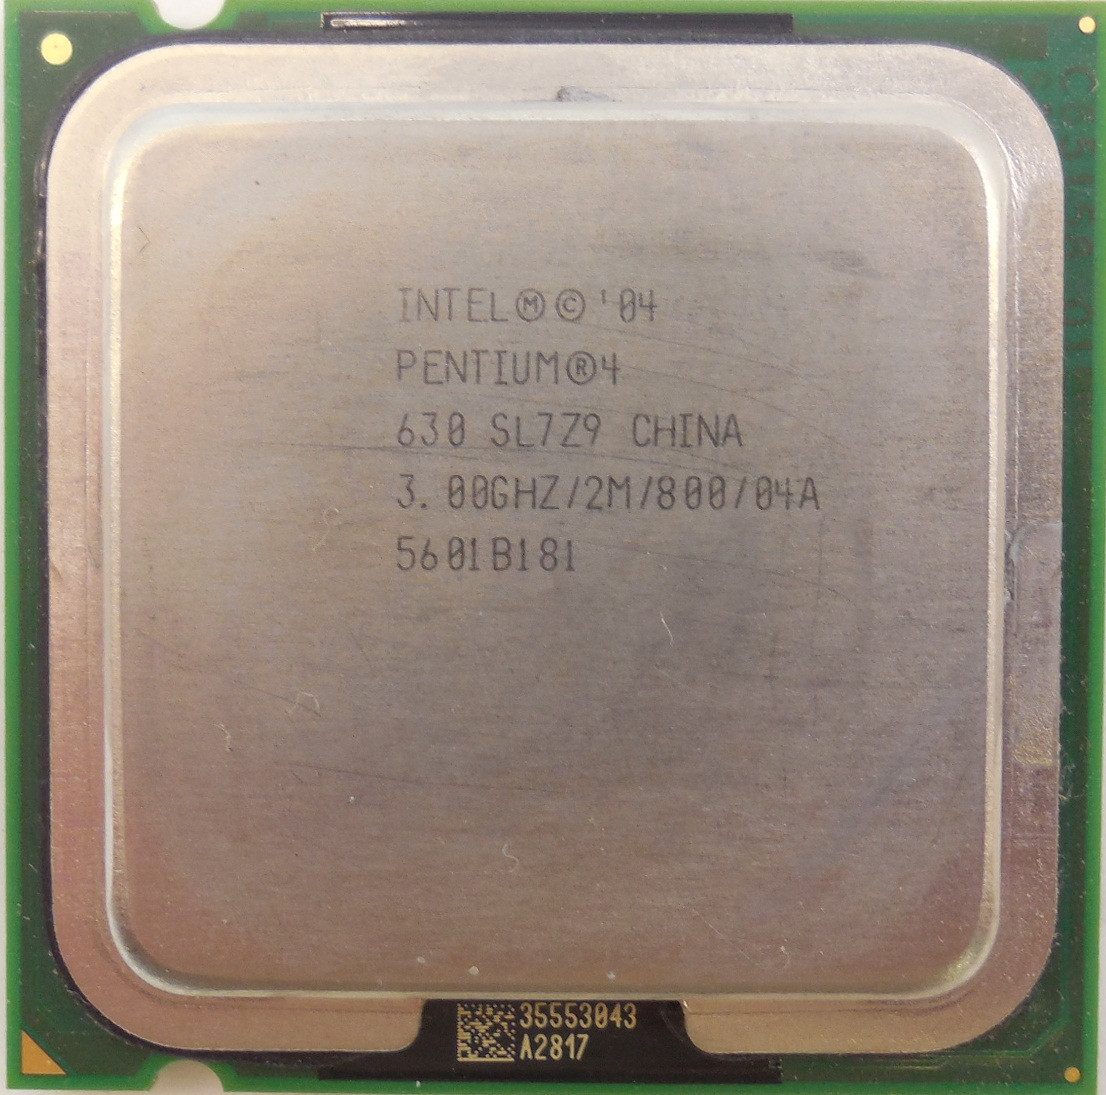 Pentium r 3.00 ghz. Процессор Intel Pentium 4. Процессор Интел пентиум 4. Процессор Intel Pentium 4 2,0 ГГЦ. Интел процессор 630 sl729.